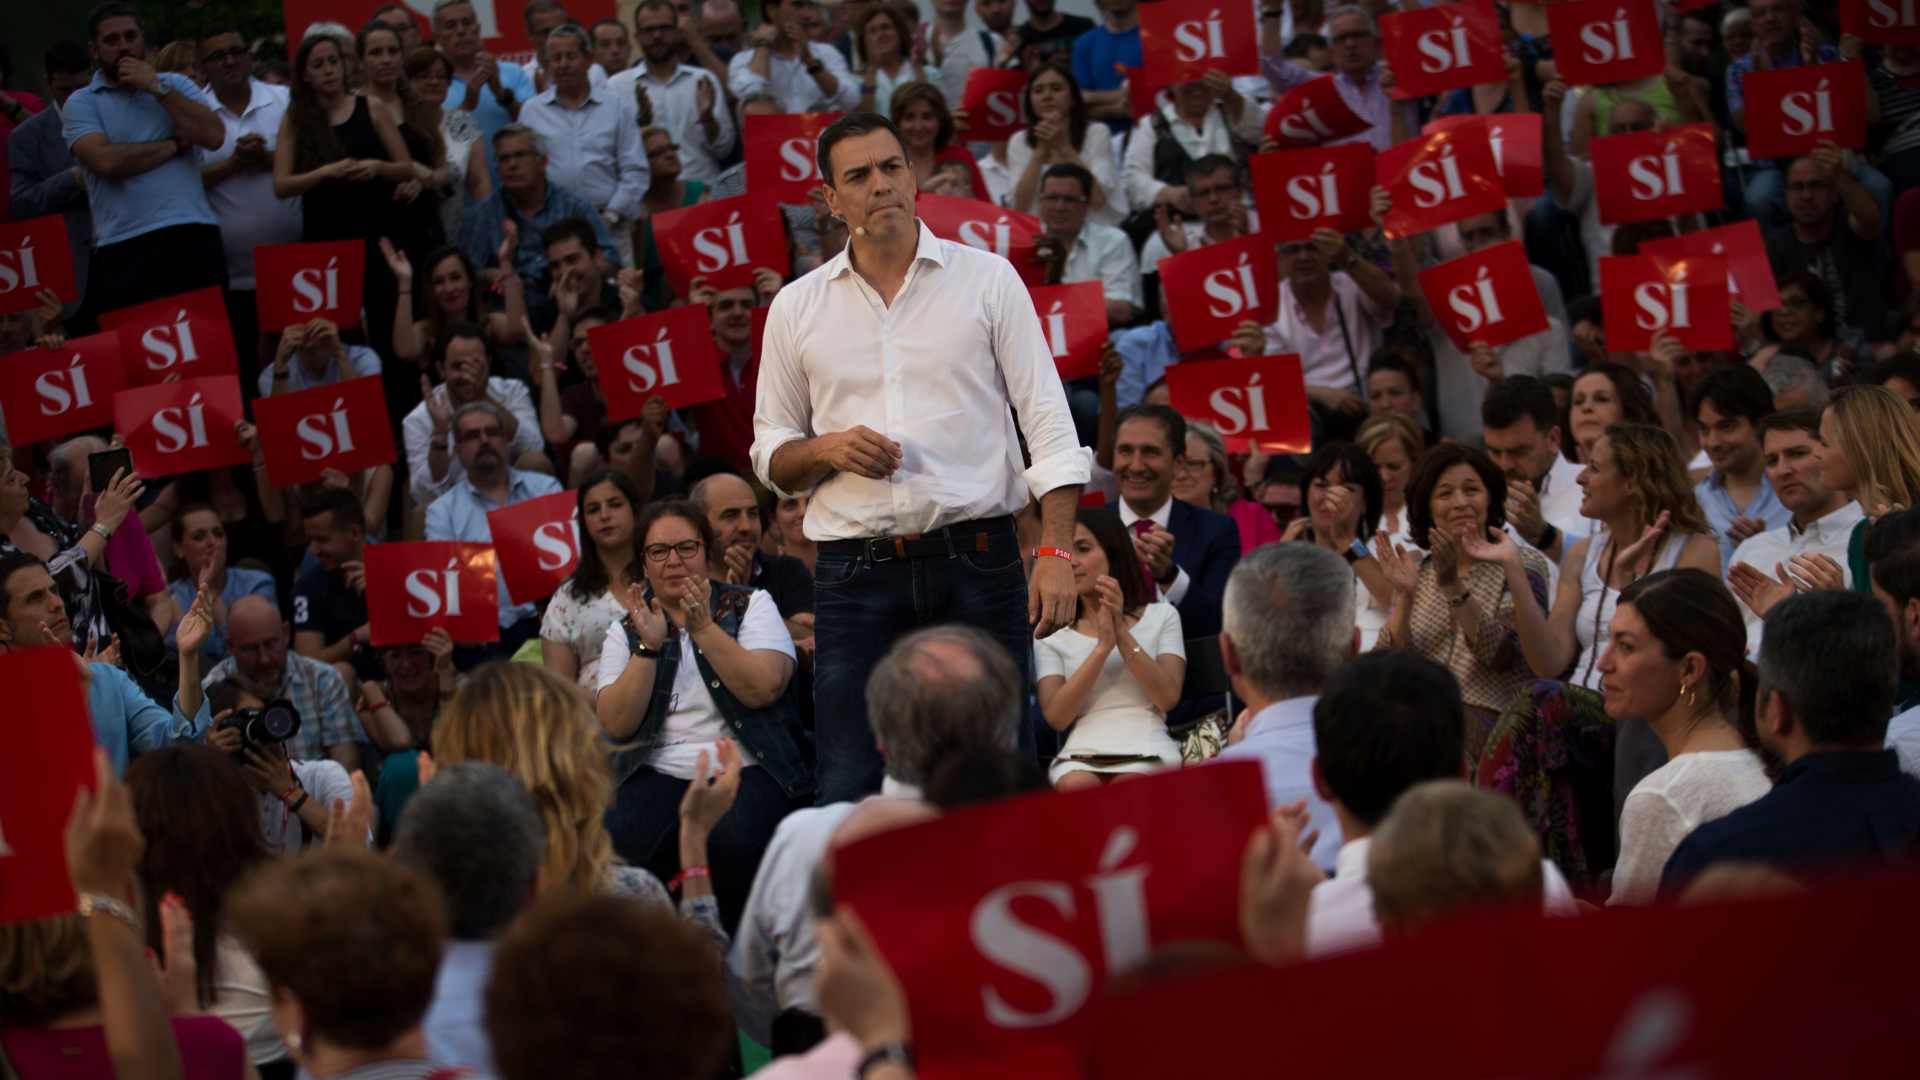 El PSOE se mantiene como partido más votado seguido del PP, según el último barómetro del CIS